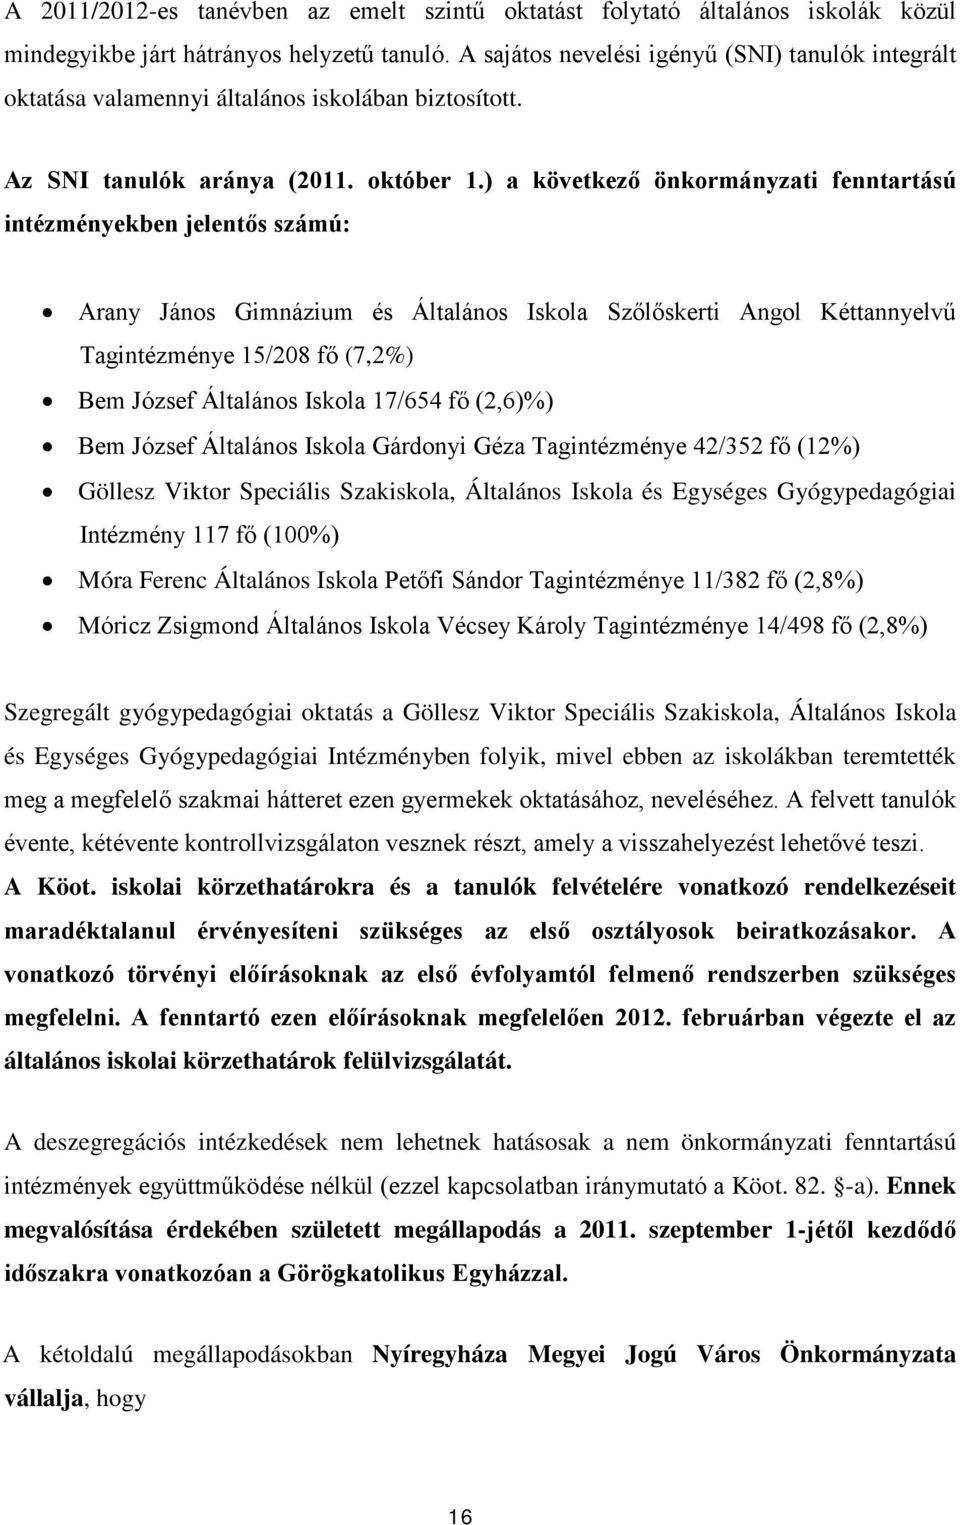 ) a következő önkormányzati fenntartású intézményekben jelentős számú: Arany János Gimnázium és Általános Iskola Szőlőskerti Angol Kéttannyelvű Tagintézménye 15/208 fő (7,2%) Bem József Általános